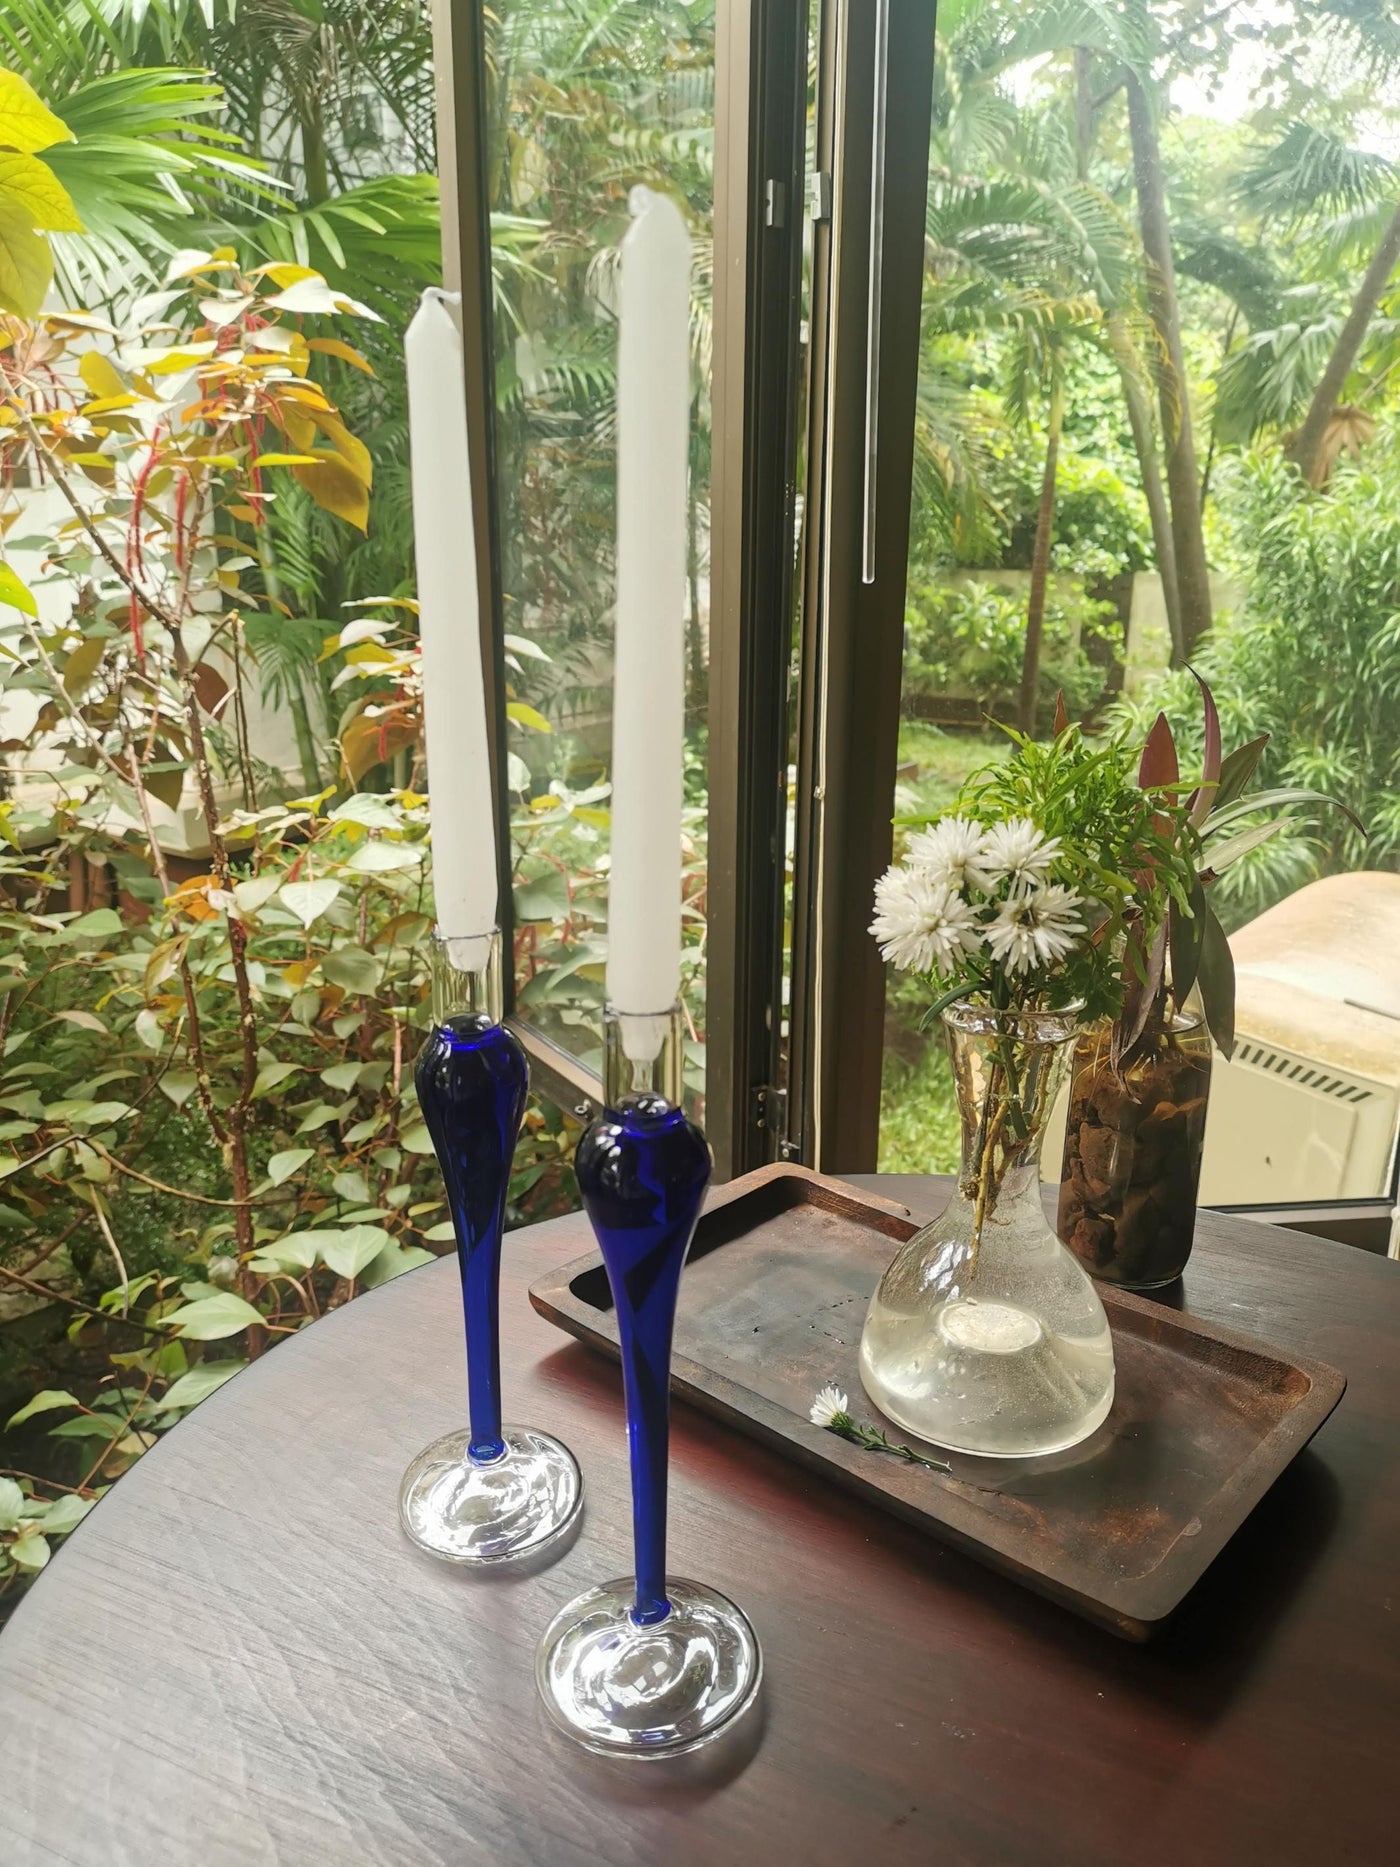 Cobalt Taper Candle holder - Elegant vintage glass